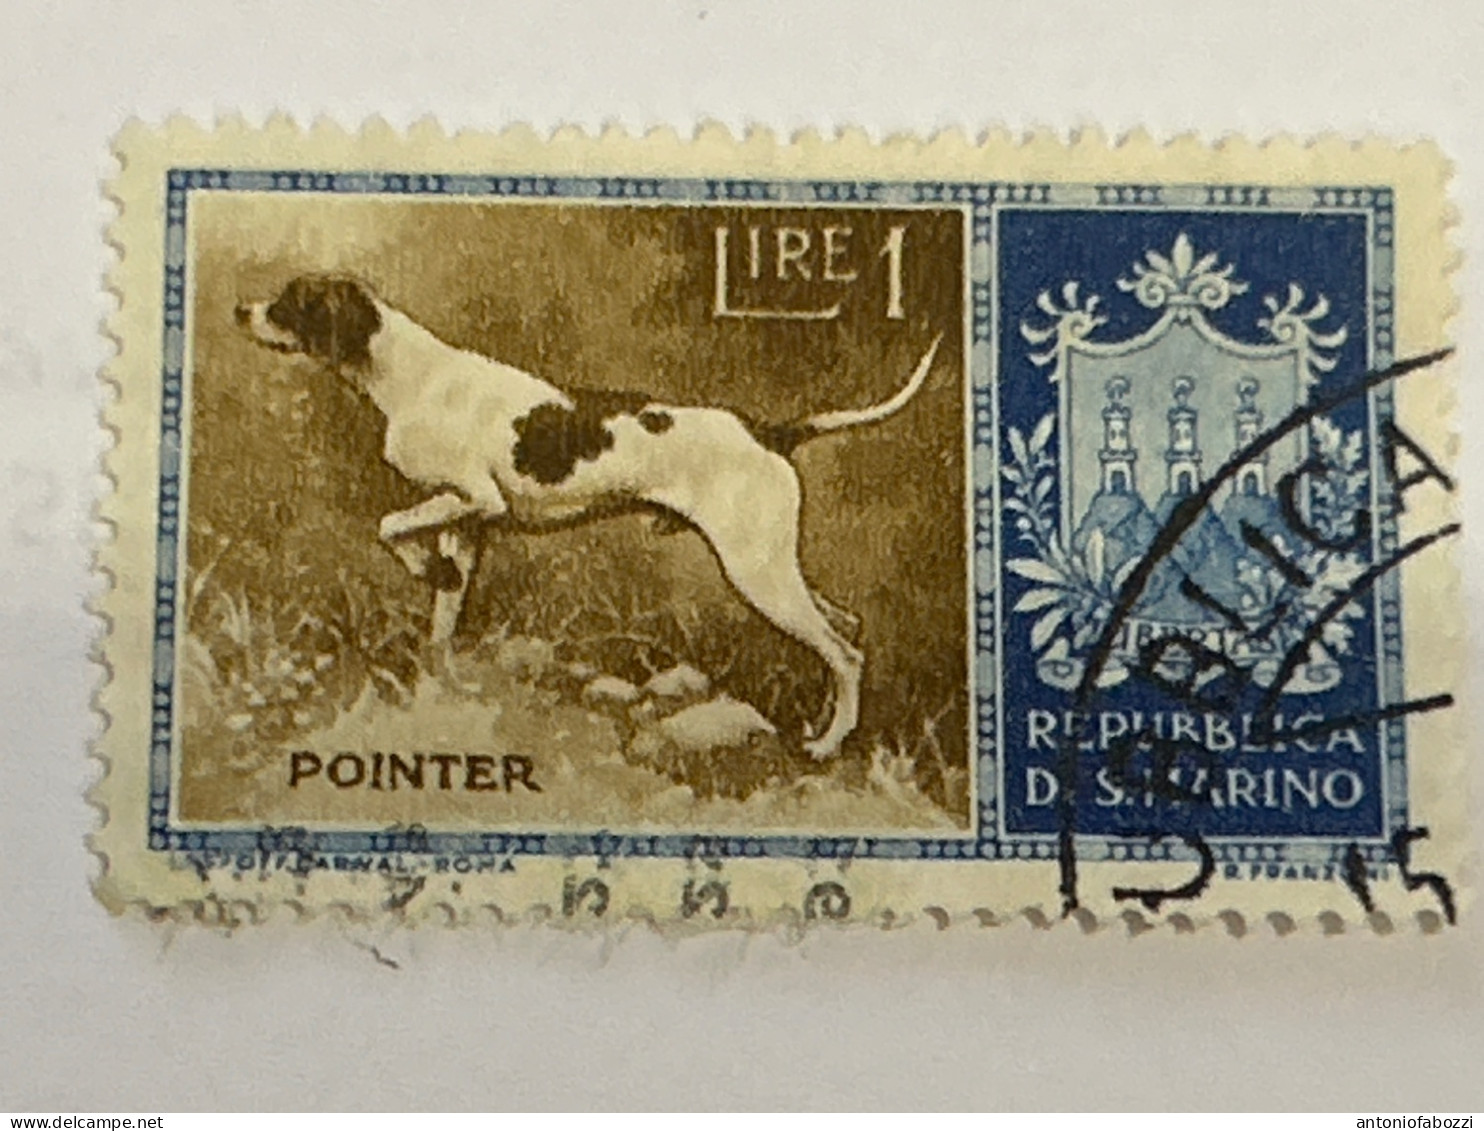 1956 Cani Di Razza Pointier - Lire 1 - Catalogo Unificato 439 - Used Stamps